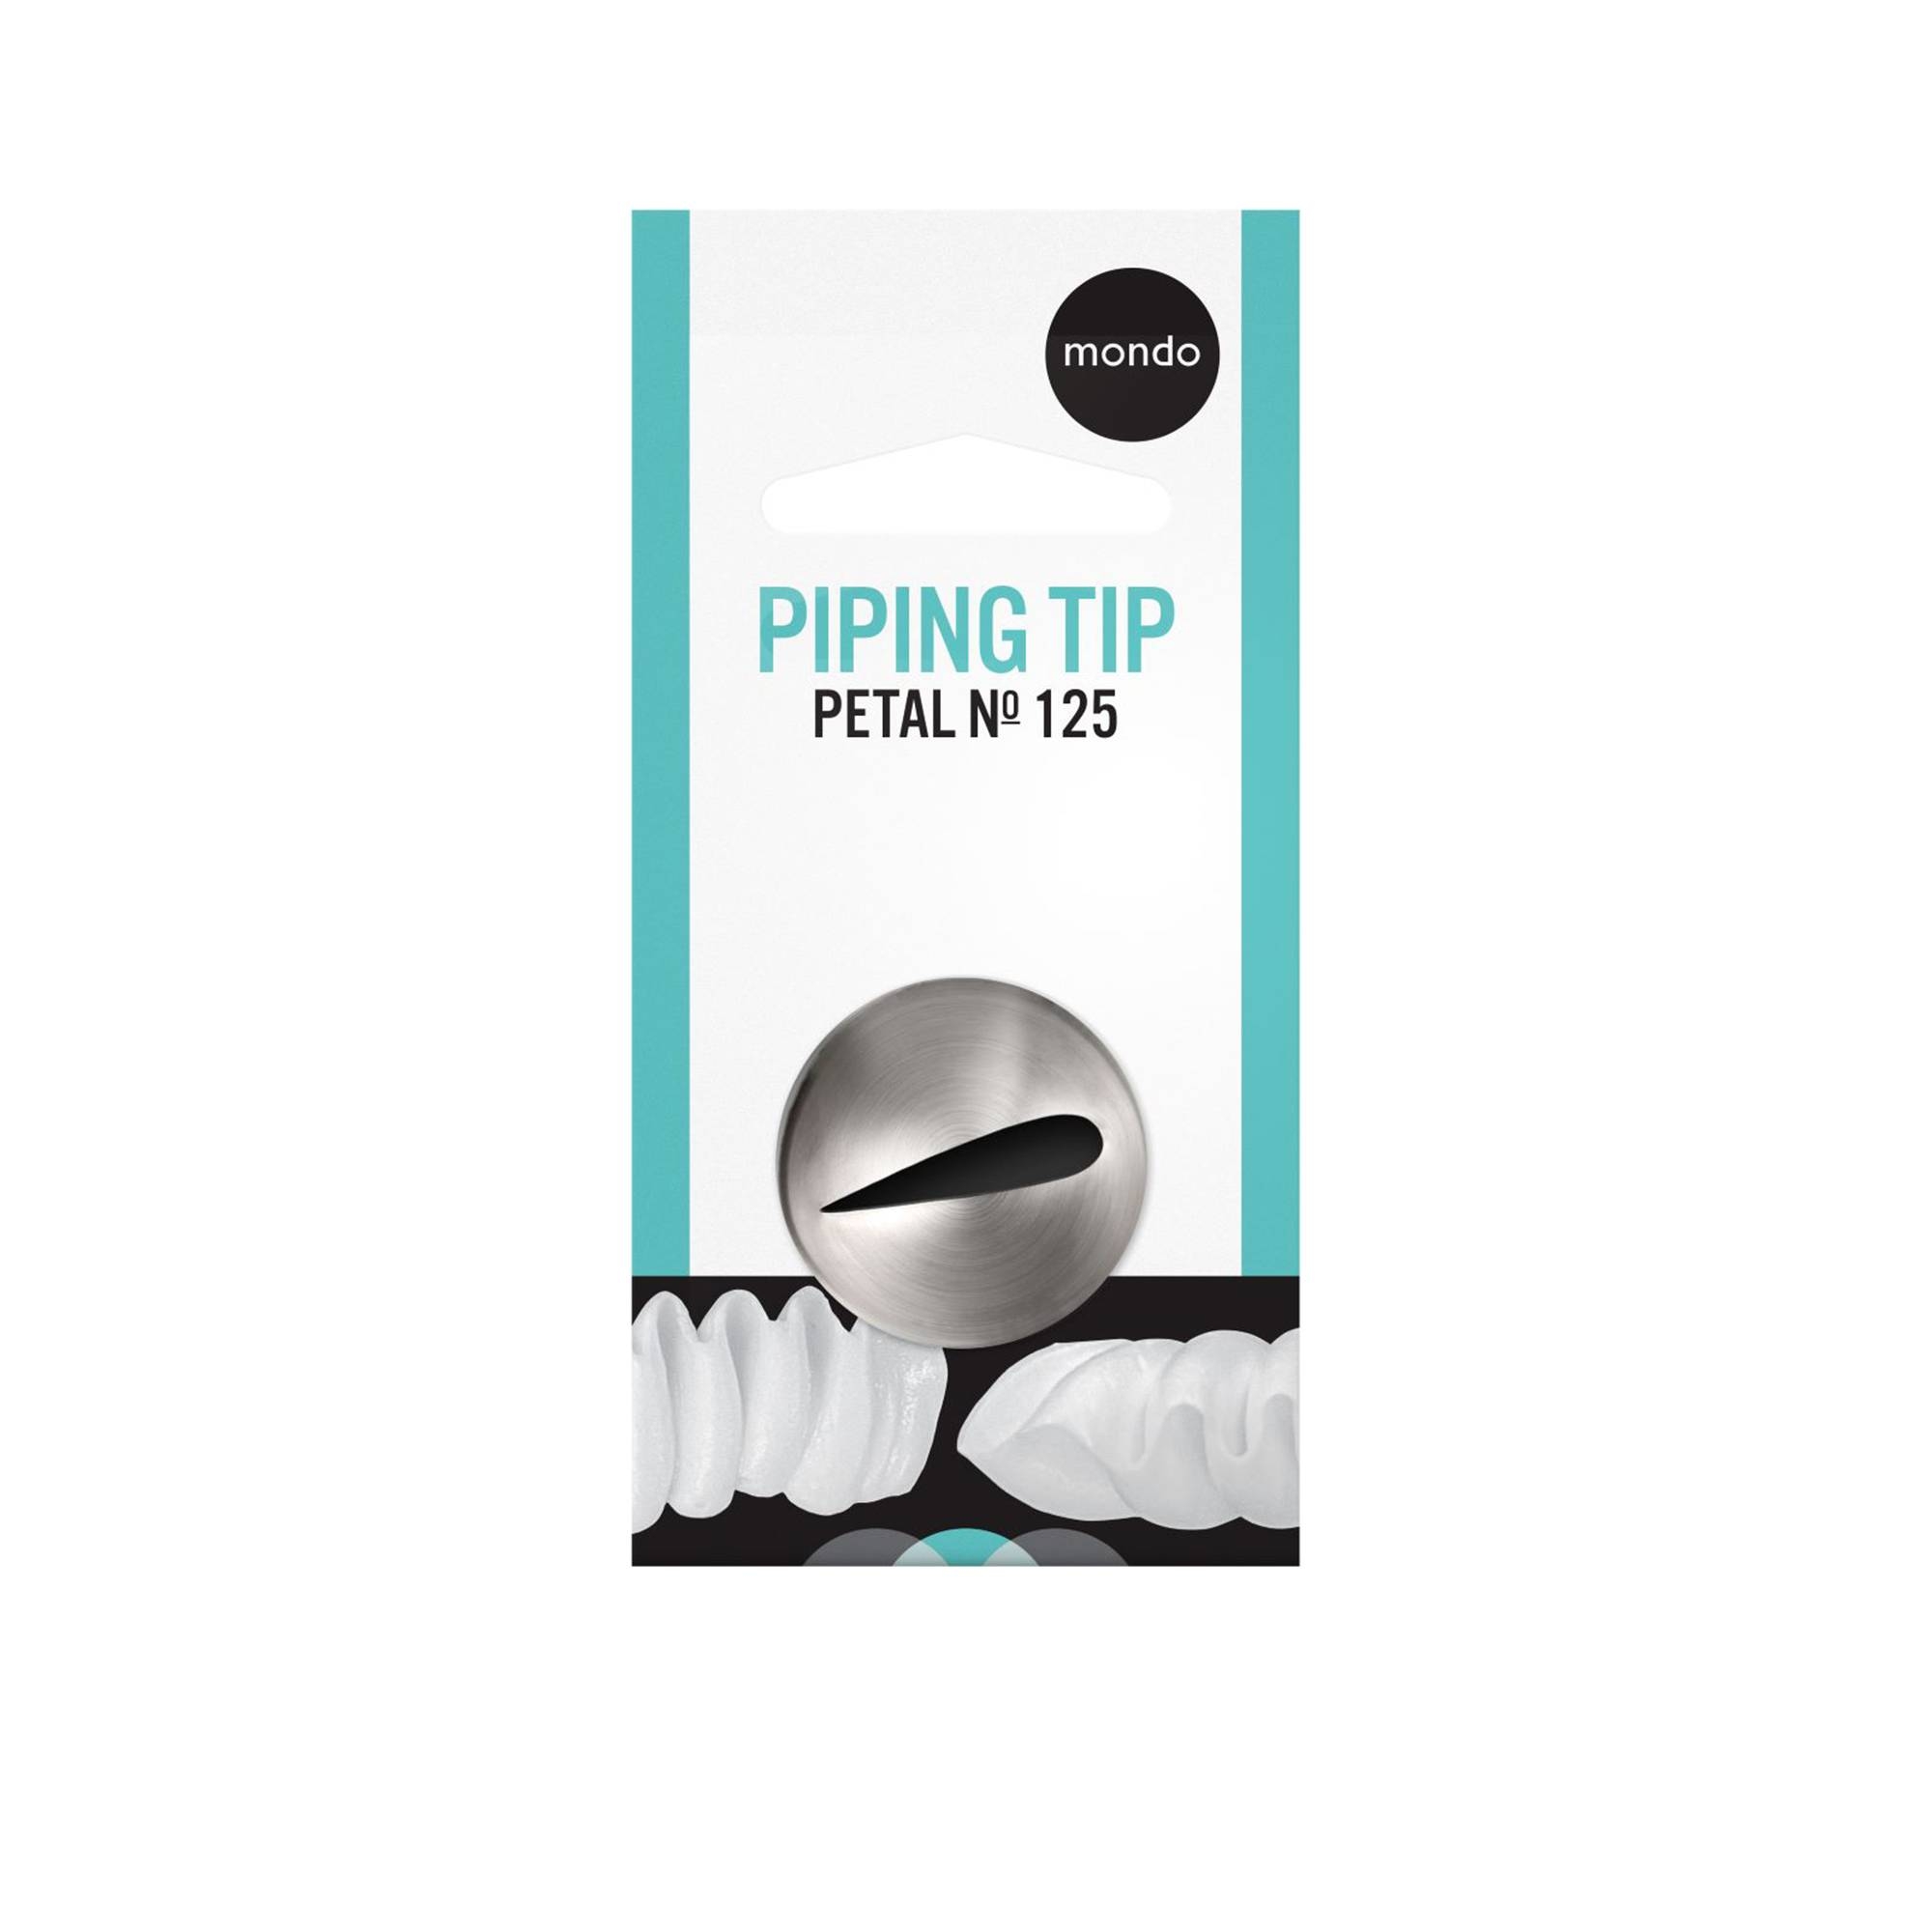 Mondo LG Petal Piping Tip #125 Image 1